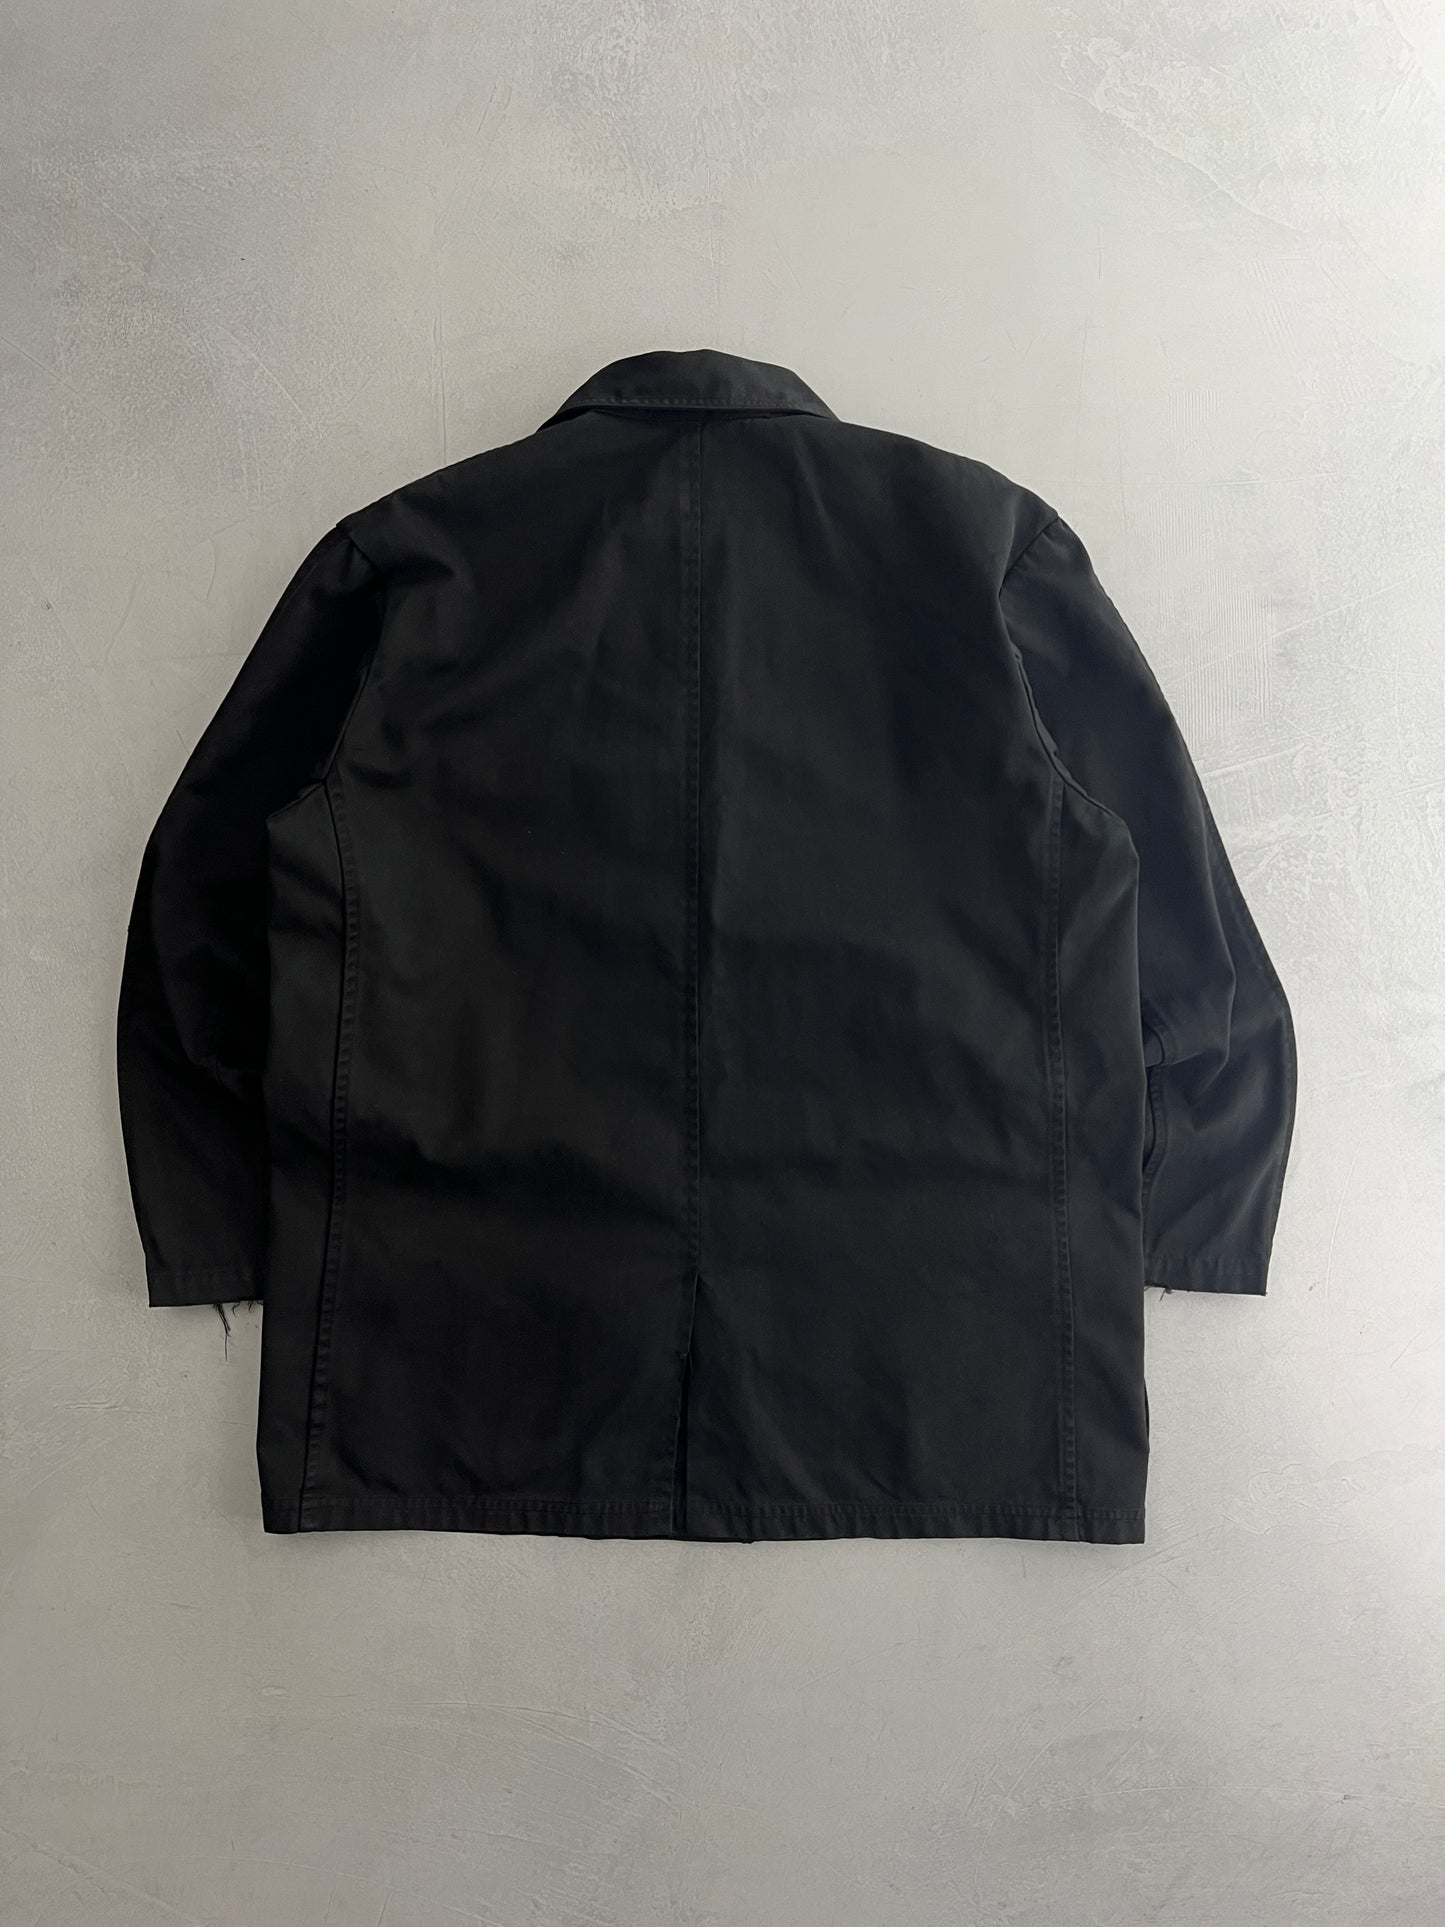 Overdyed Japanese NEC Jacket [S/M]